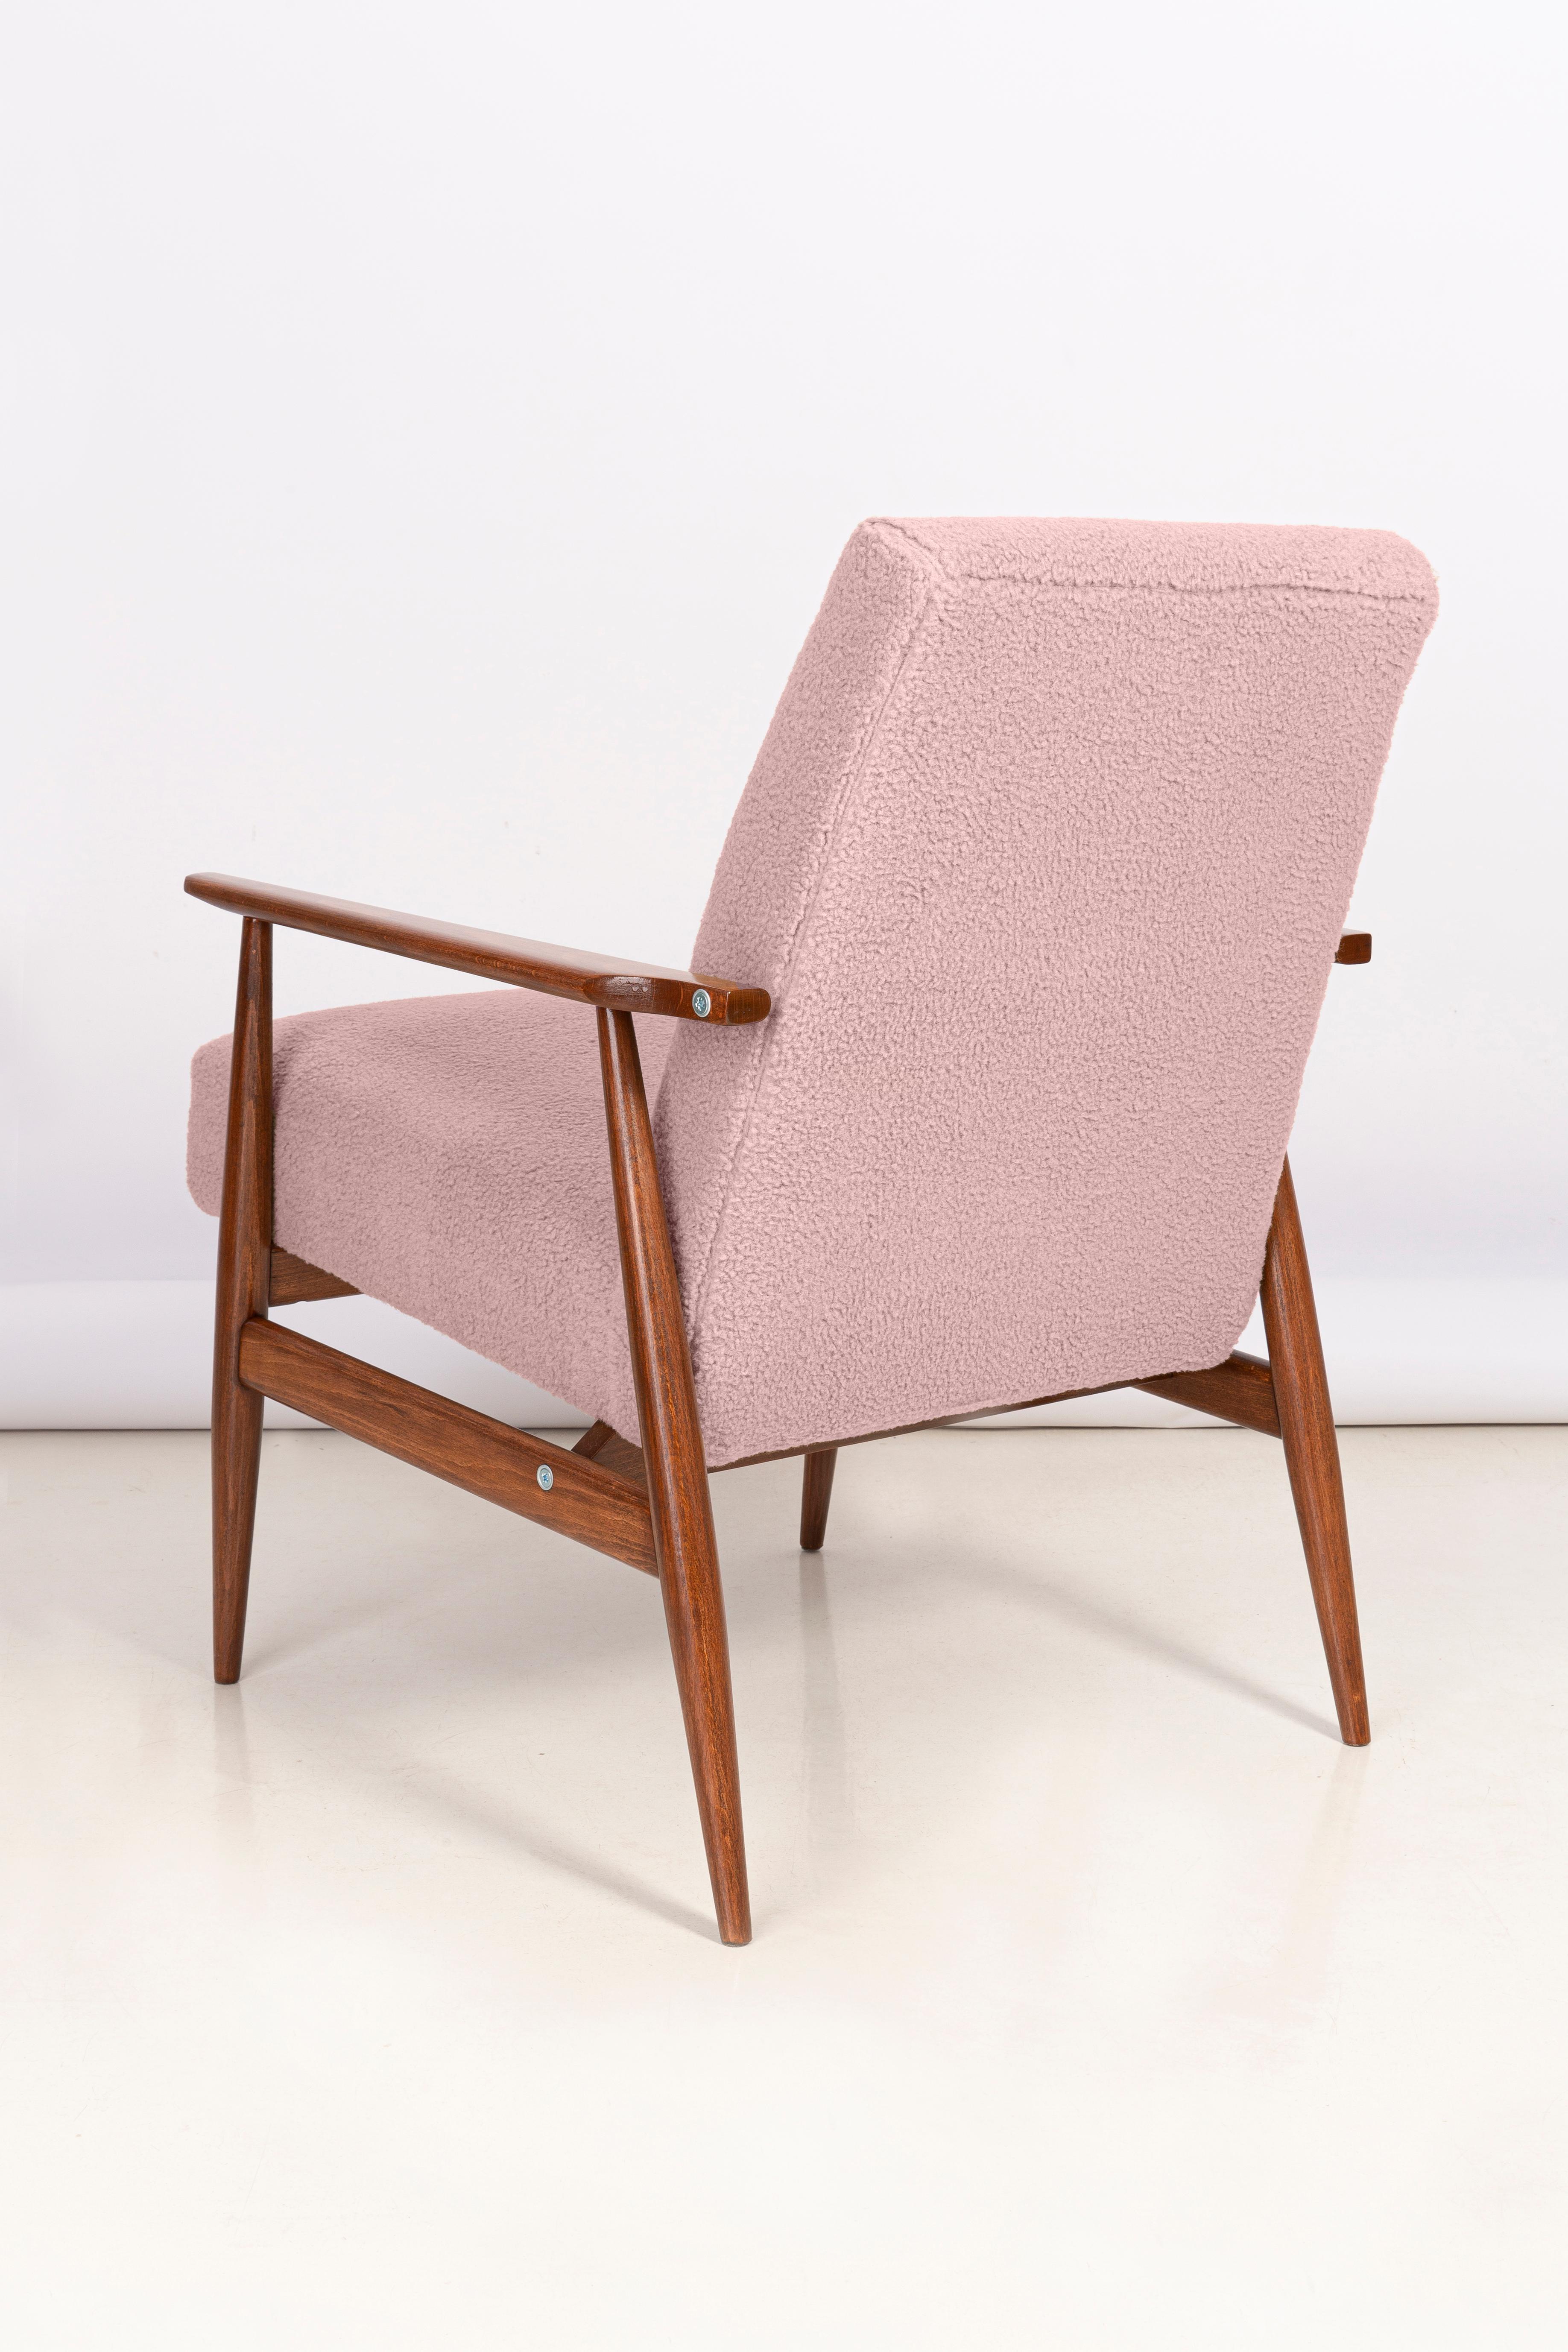 20th Century Dusty Pink Bouclé Dante Armchair, H. Lis, Europe, 1960s For Sale